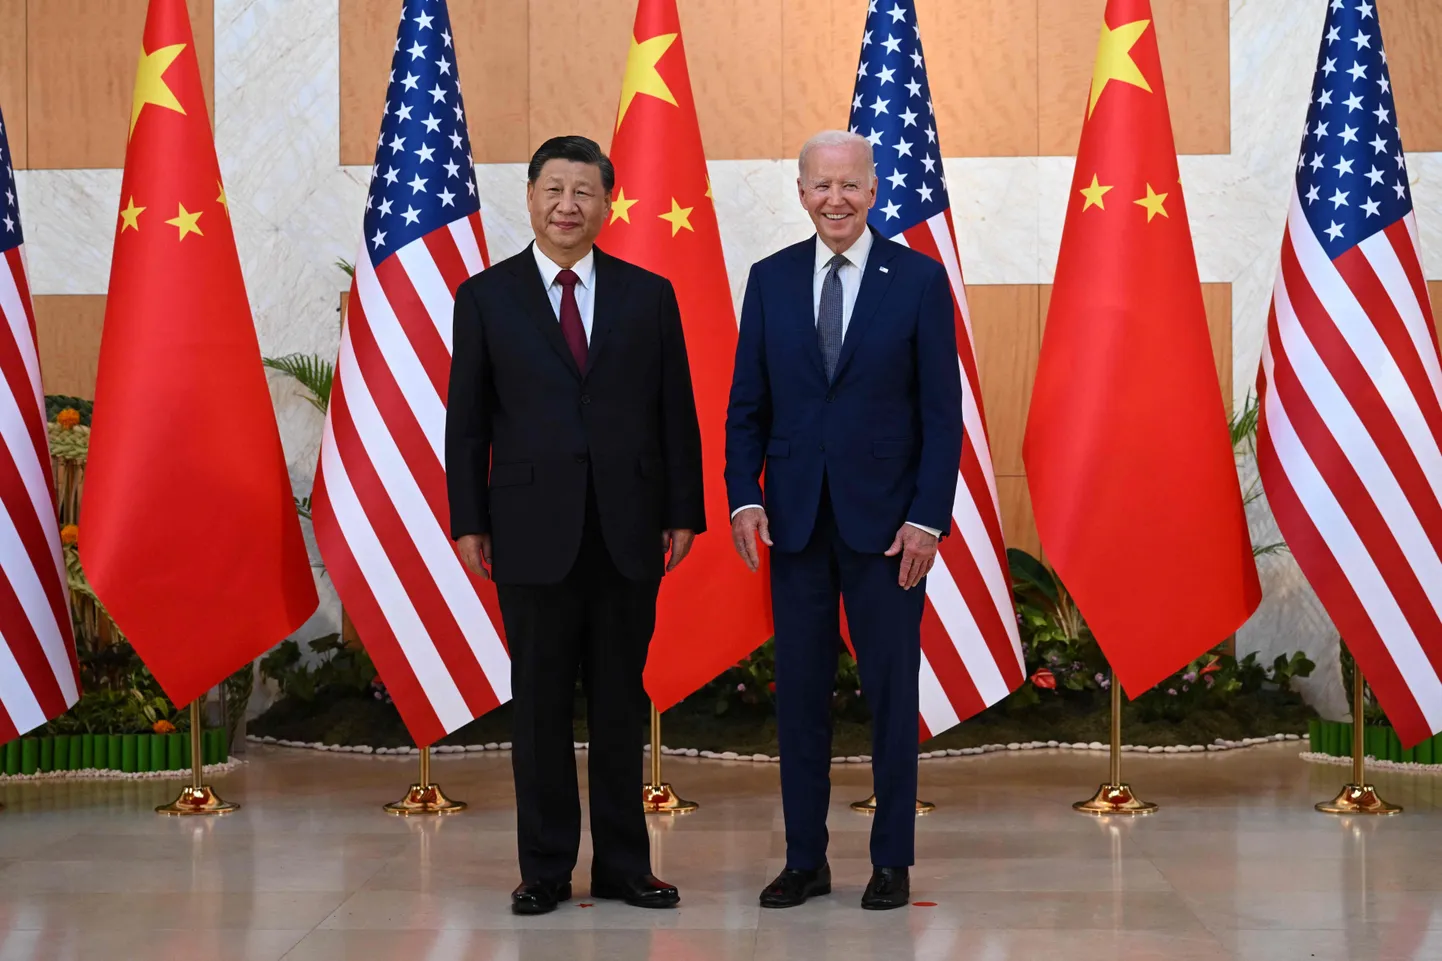 USA presidentJoe Biden ja Hiina liider Xi Jinping kohtumas Bali saarel G20 tippkohtumise kõrvalt.